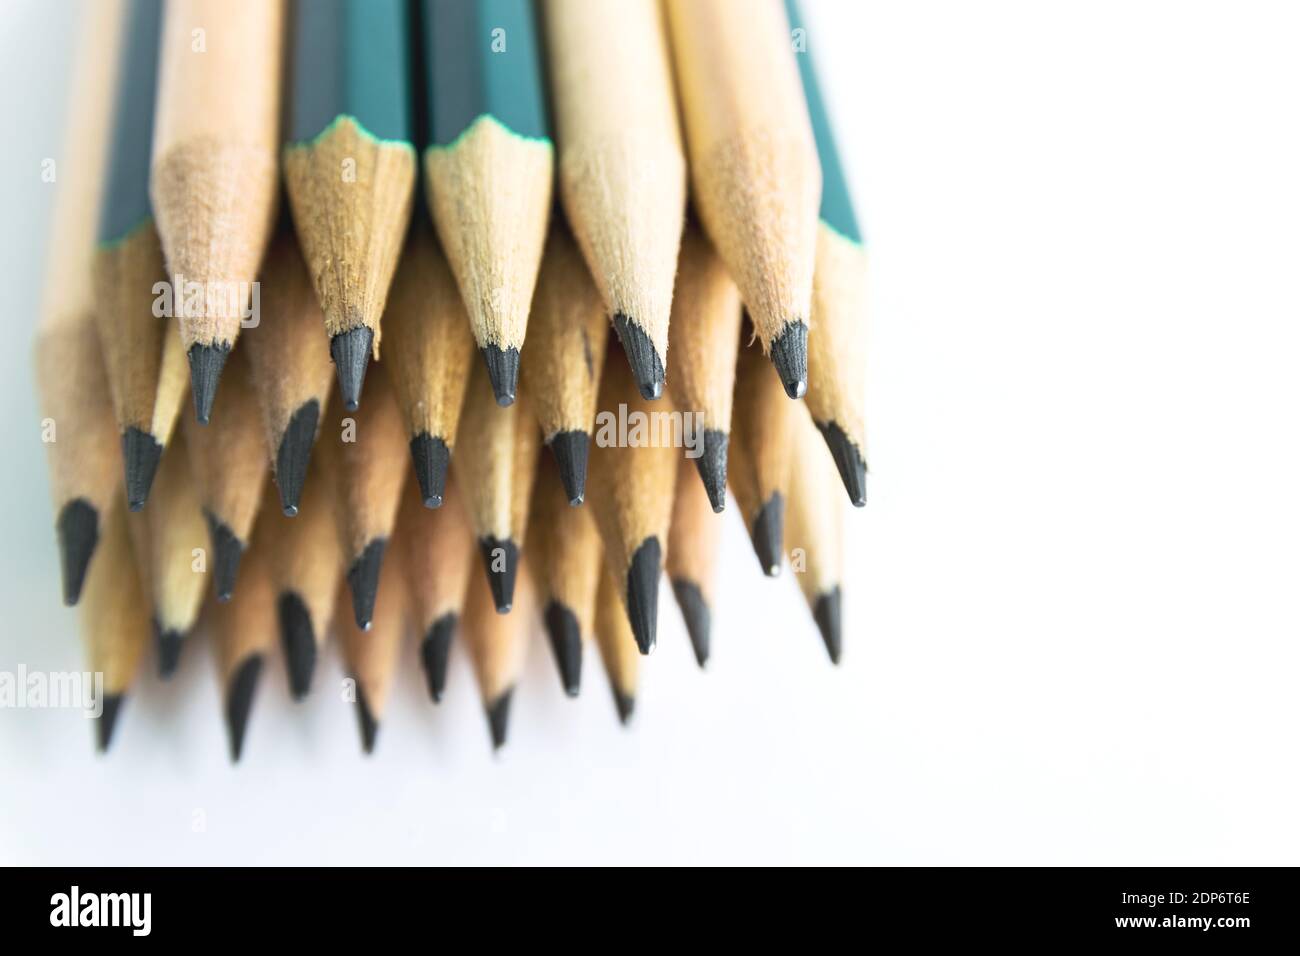 Lápices es un instrumento para escribir o dibujar, que consiste en un palo  delgado de grafito o una sustancia similar encerrado en un pedazo largo y  delgado de madera o fijado en